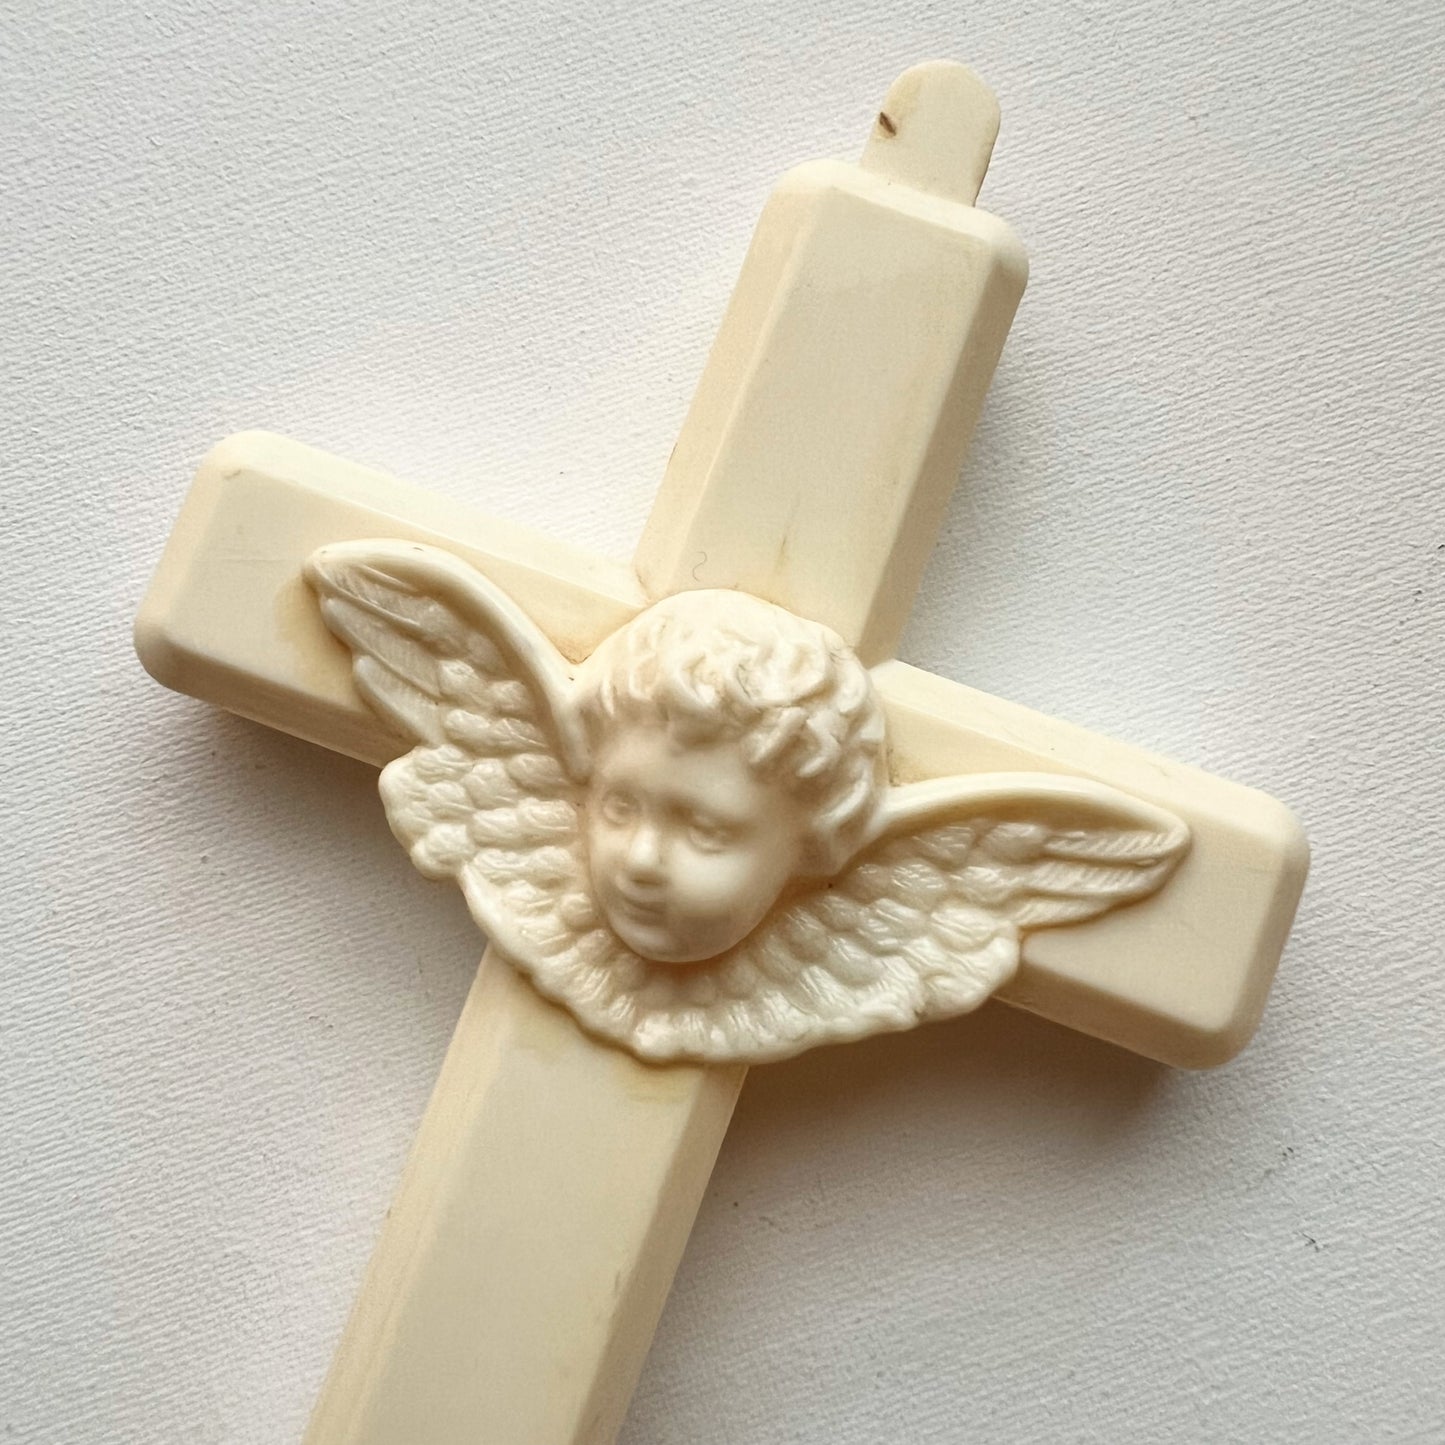 【Vintage】France - 1950s Plastic Saint's Cradle Cross